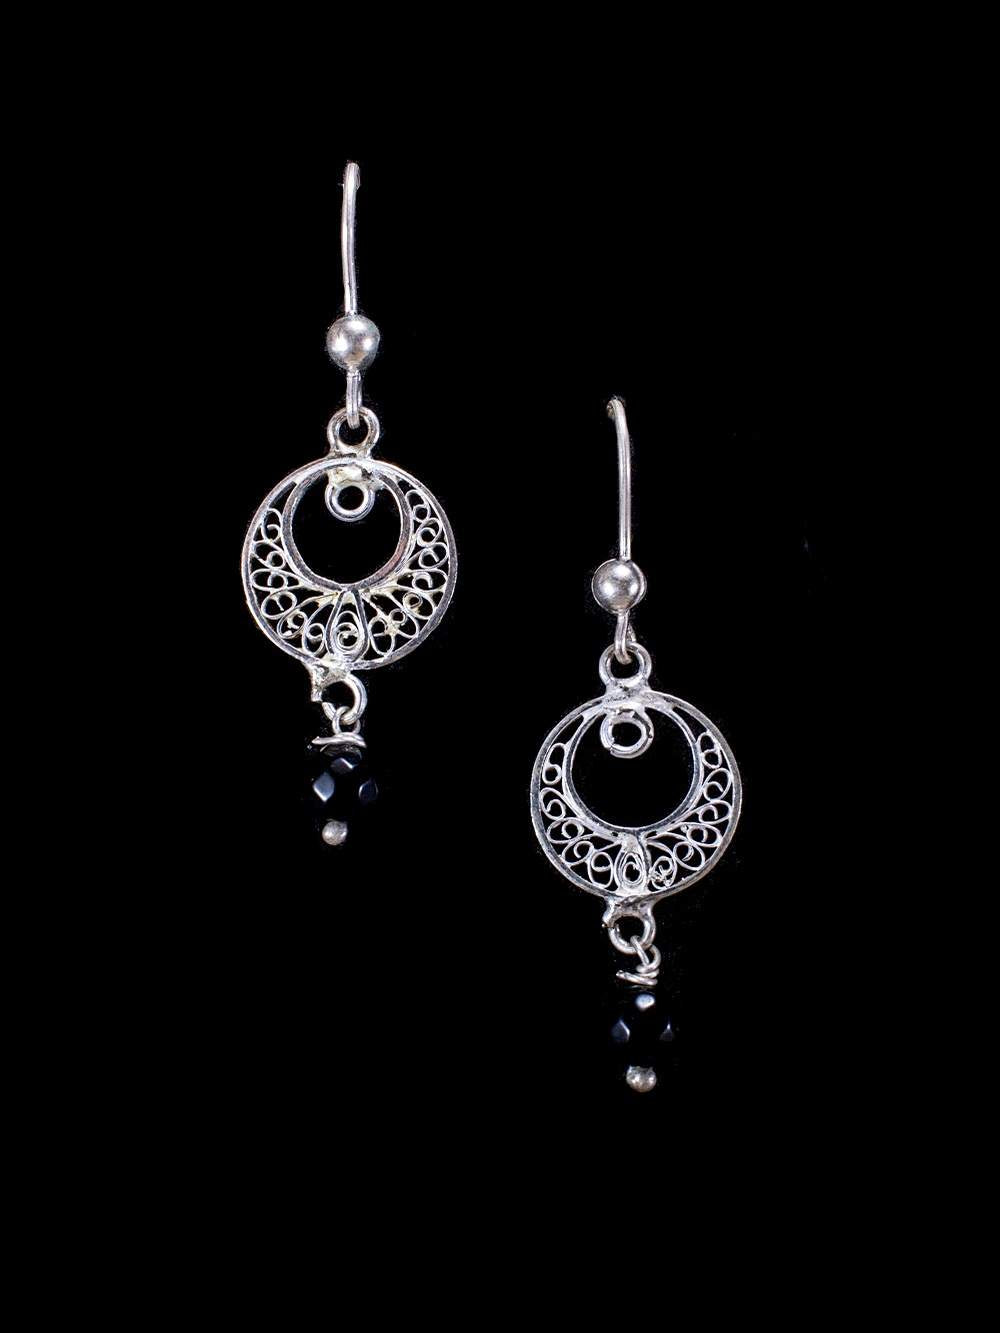 Buy Black Filigree Earrings Exotic Earrings Art Nouveau Jewelry Online in  India  Etsy